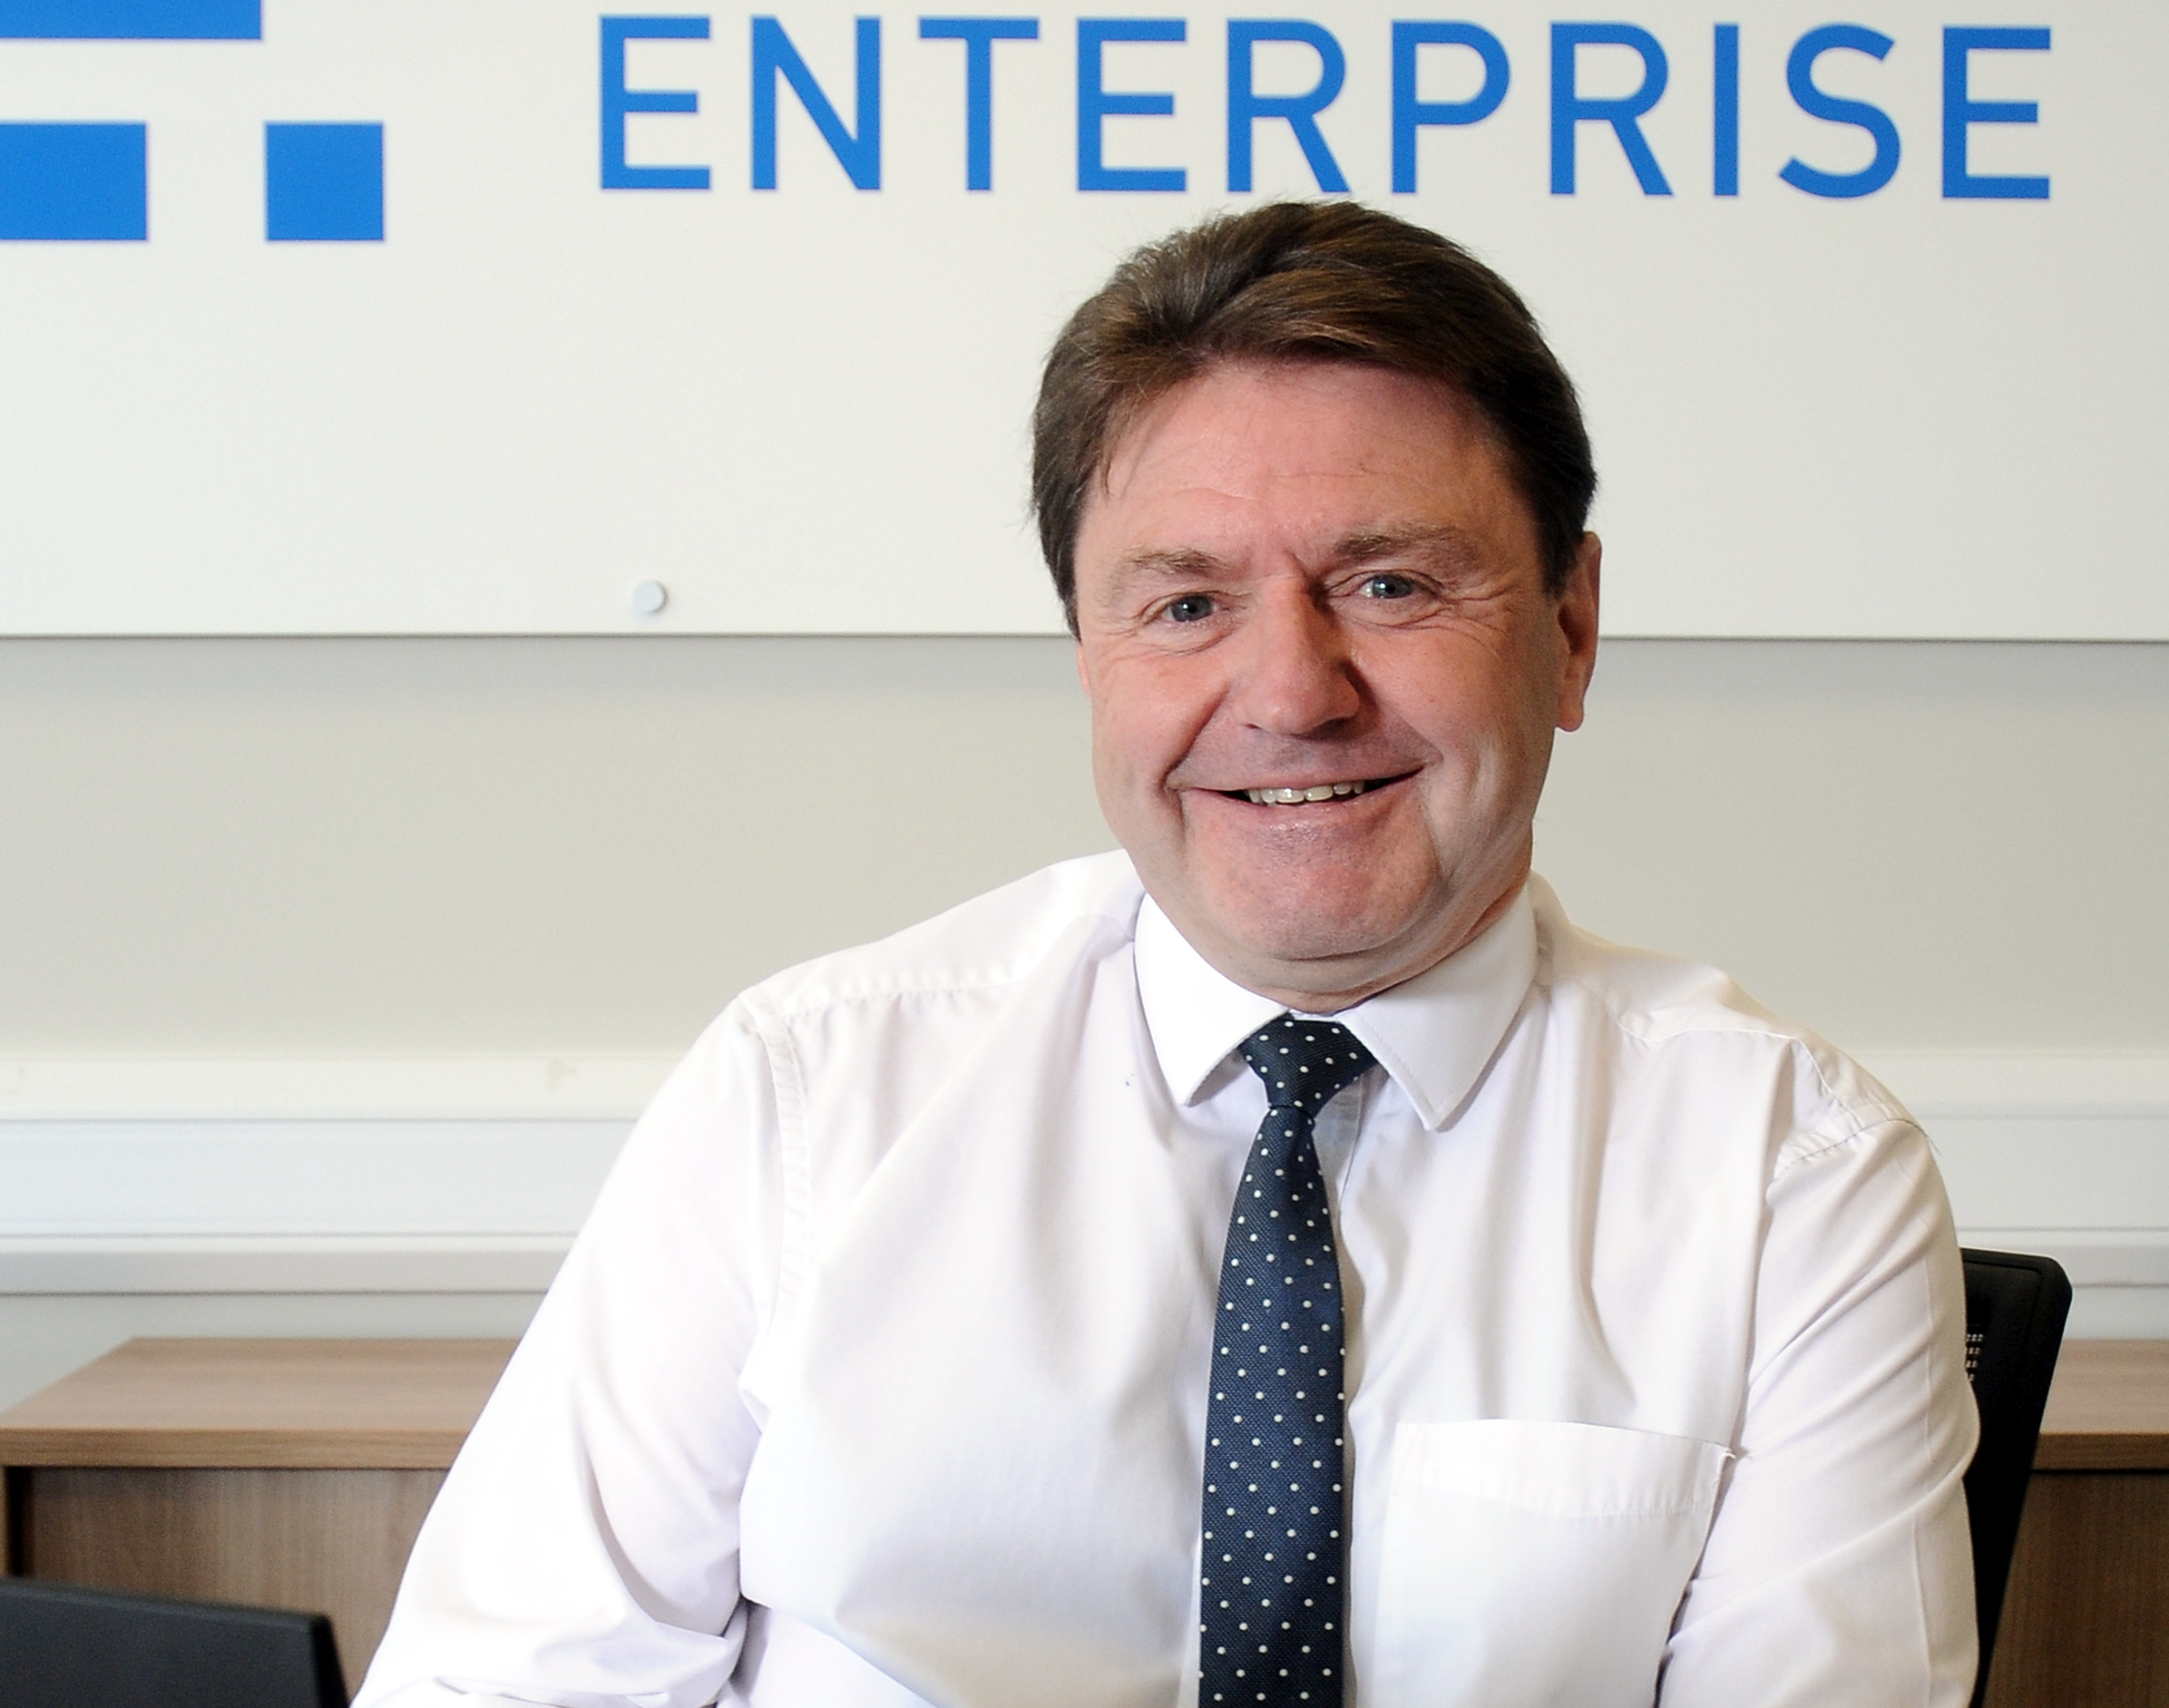 Fortæl mig nul mere og mere Tim Daniels surpasses £20 million lending milestone - Finance For Enterprise